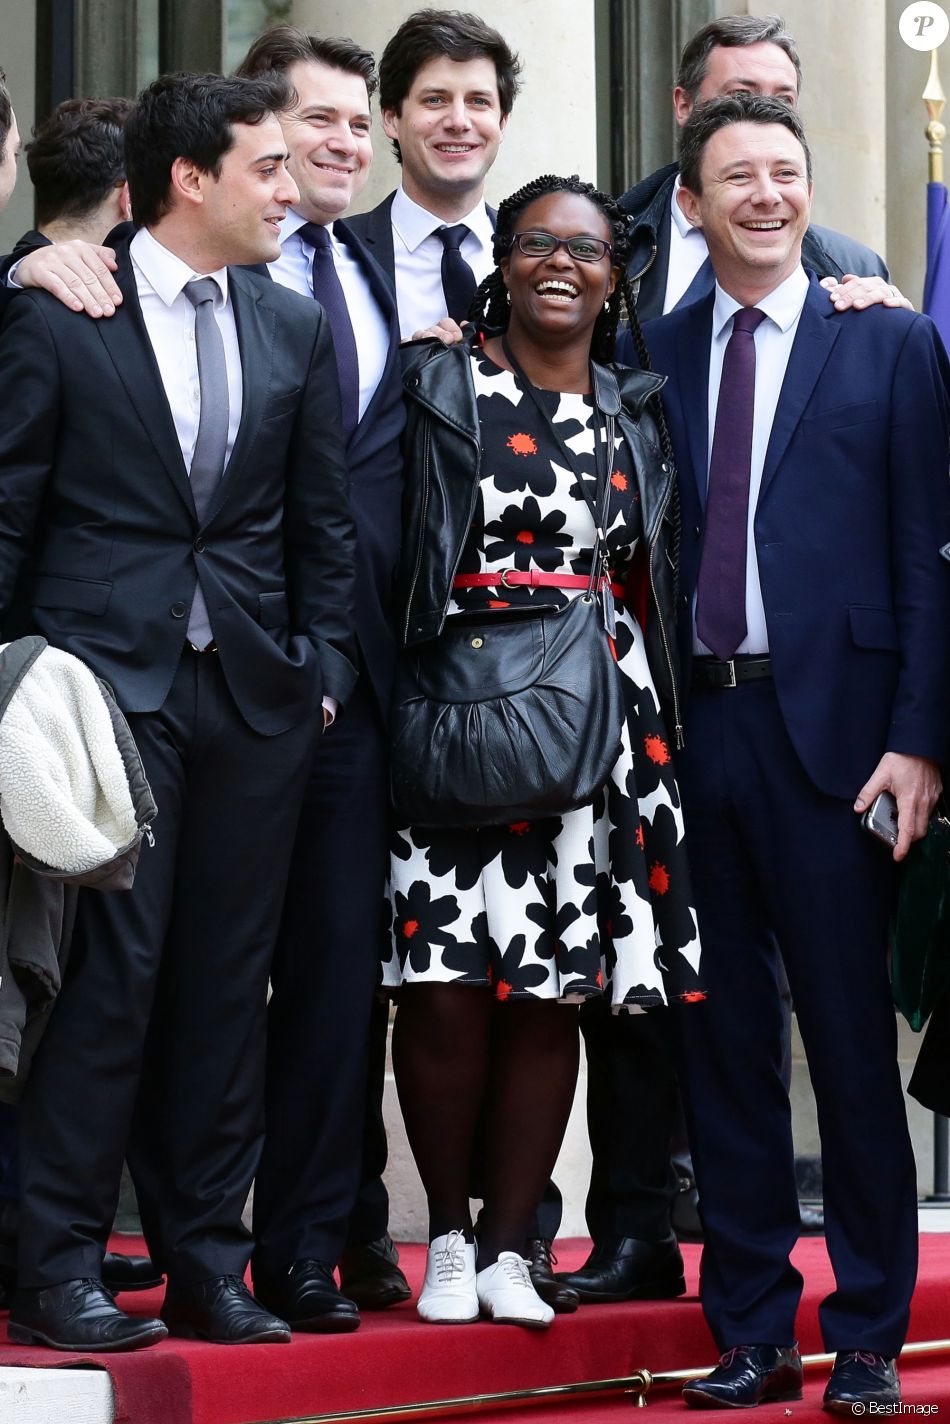 Sibeth Ndiaye la conseillère de Macron fait le buzz avec son look lors de l'investiture. Photos